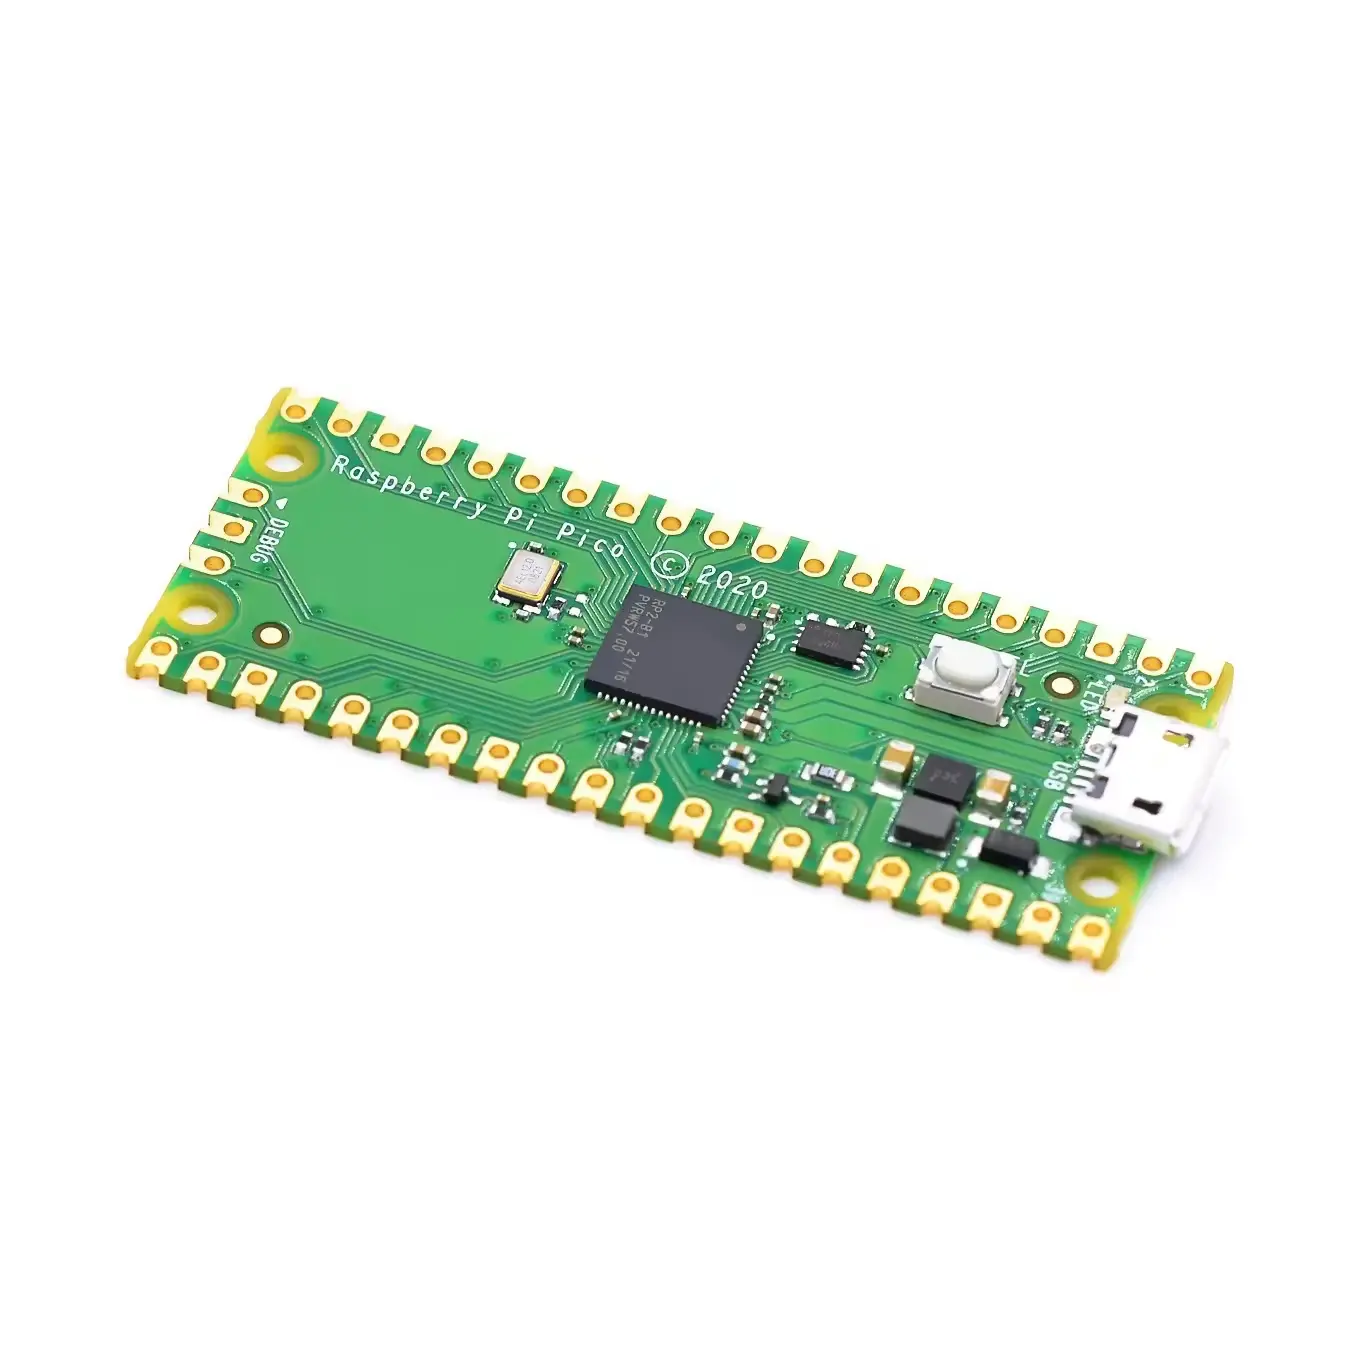 공식 라즈베리 가죽 피코보드 RP2040 듀얼 코어 264KB ARM 저전력 마이크로컴퓨터 고성능 Cortex-M0 + 프로세서